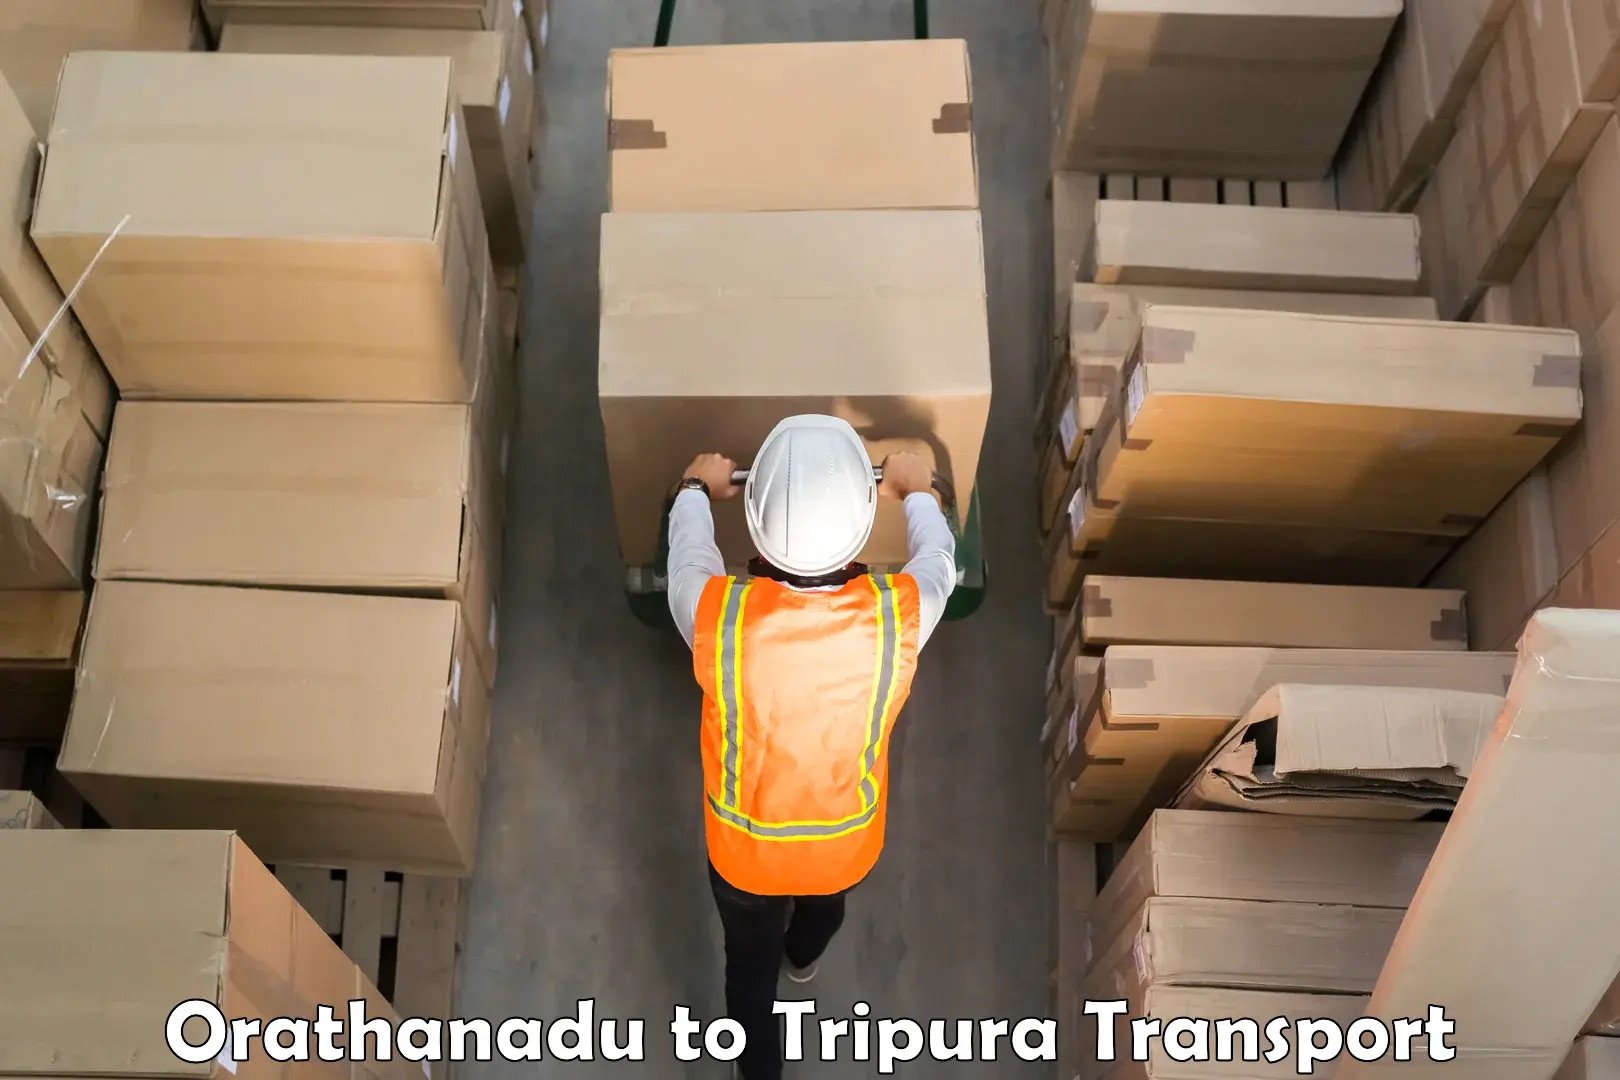 Shipping partner Orathanadu to Kamalpur